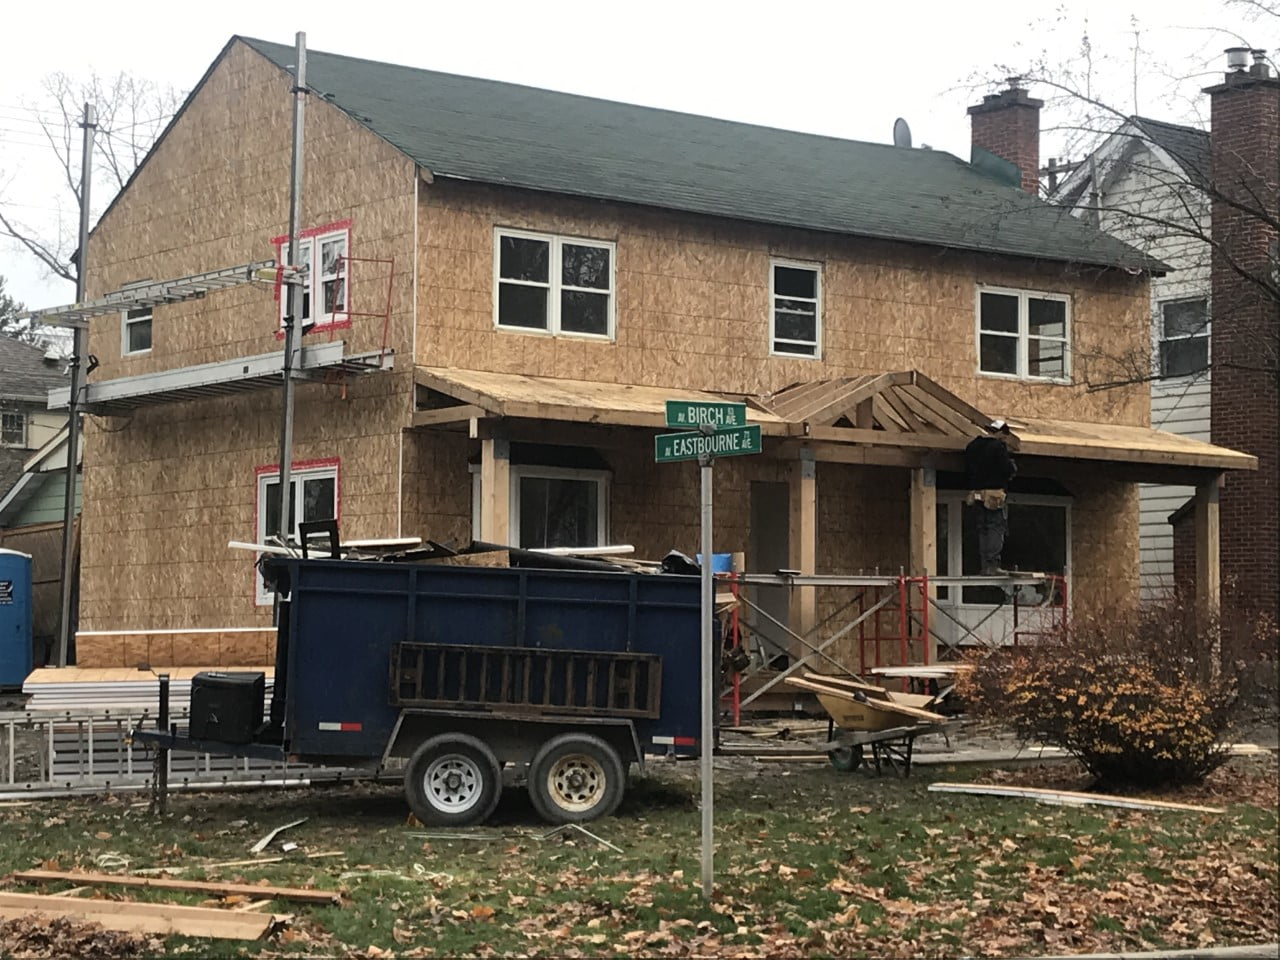 Ottawa home addition contractors